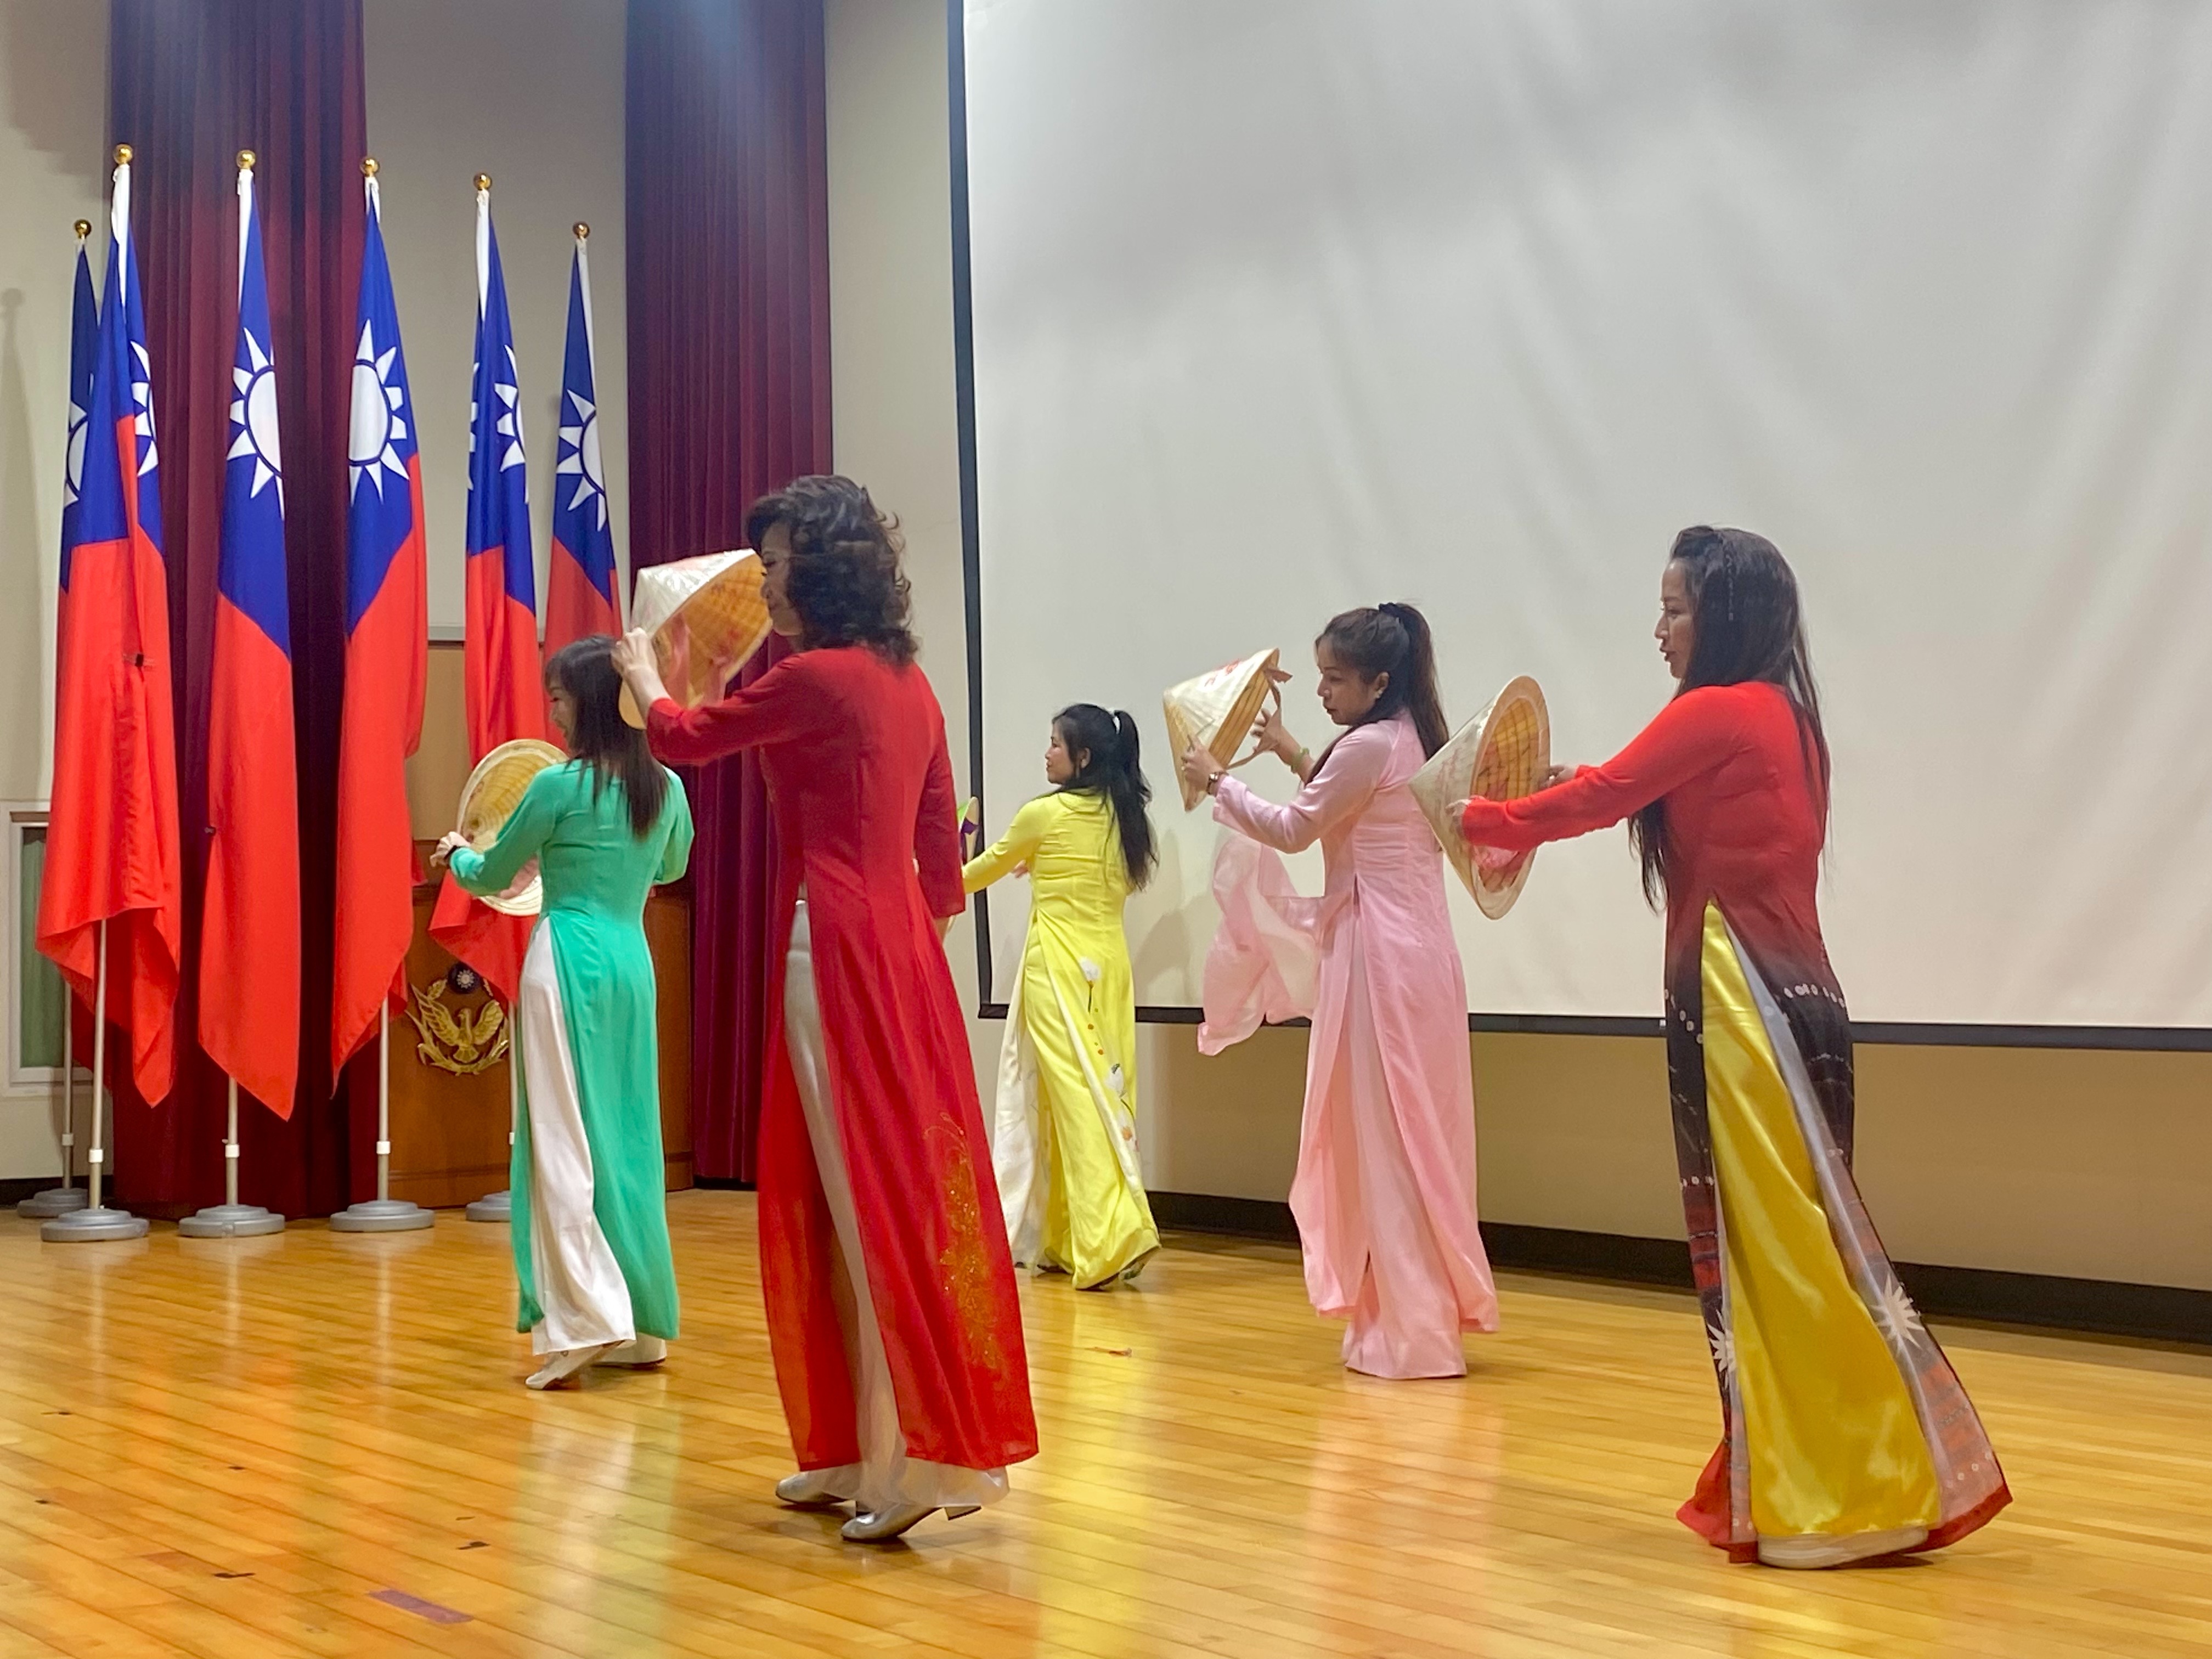 现场邀请桃园市「新移民女性关怀协会」成员穿著越南传统服饰「奥黛」，带来越南民俗舞蹈，象征桃园丰富文化及族群间共荣。记者周嘉茹／摄影